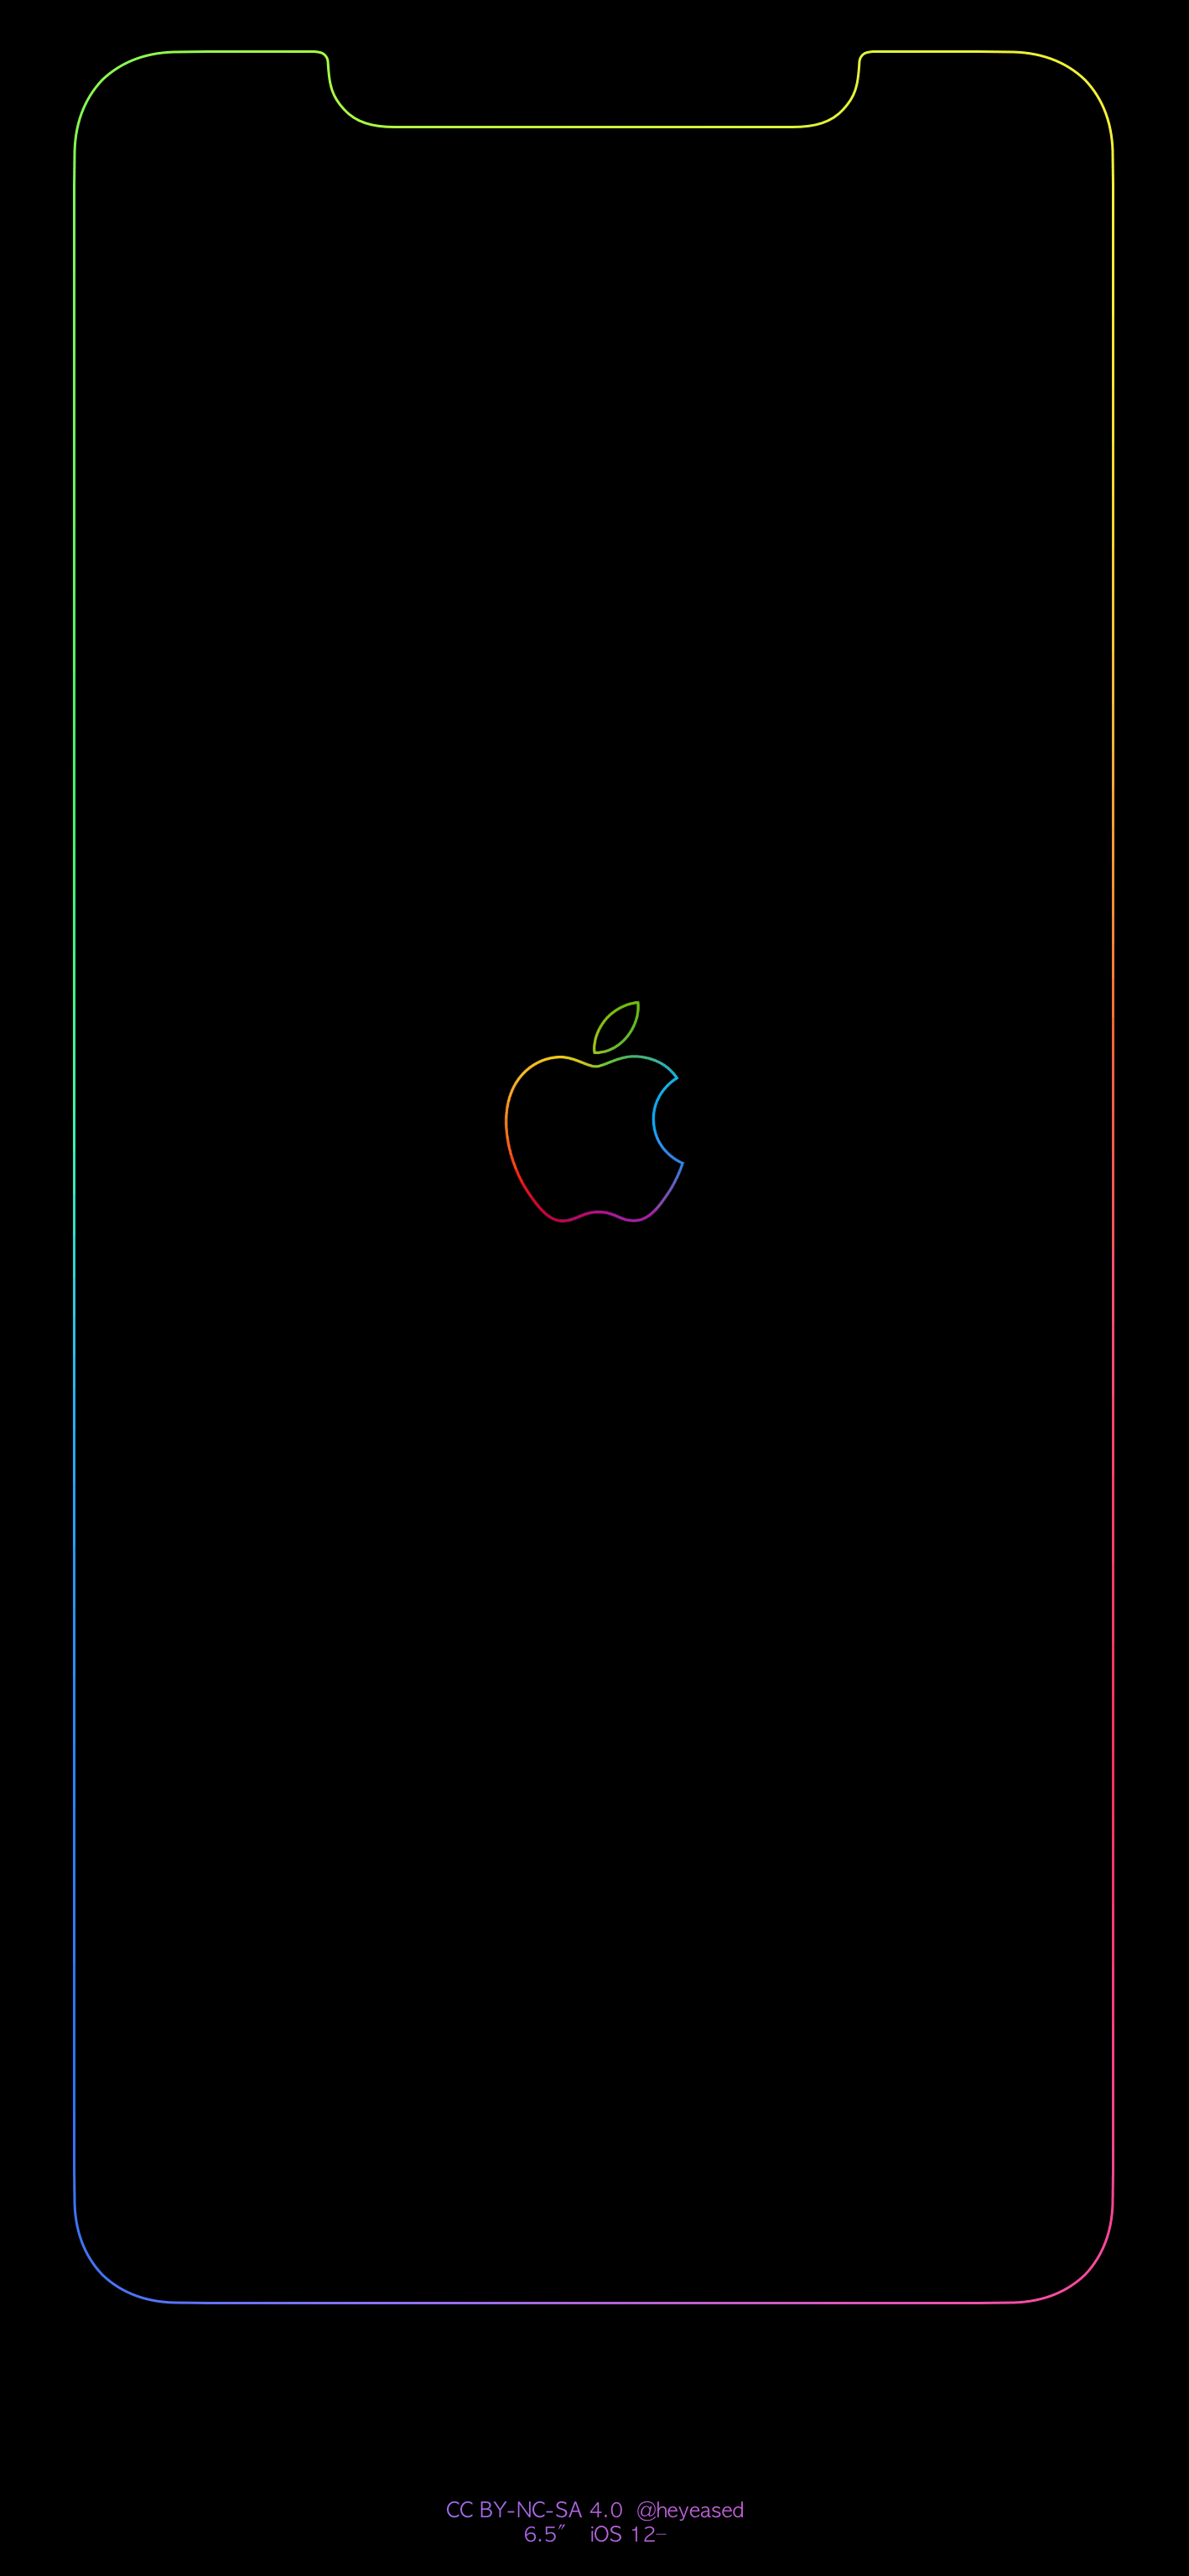 Hình nền chứa logo iPhone sẽ khiến cho thiết bị của bạn trở nên độc đáo và đậm chất cá nhân hơn bao giờ hết. Hãy thưởng thức bộ sưu tập hình nền kiểu này tại đây! 